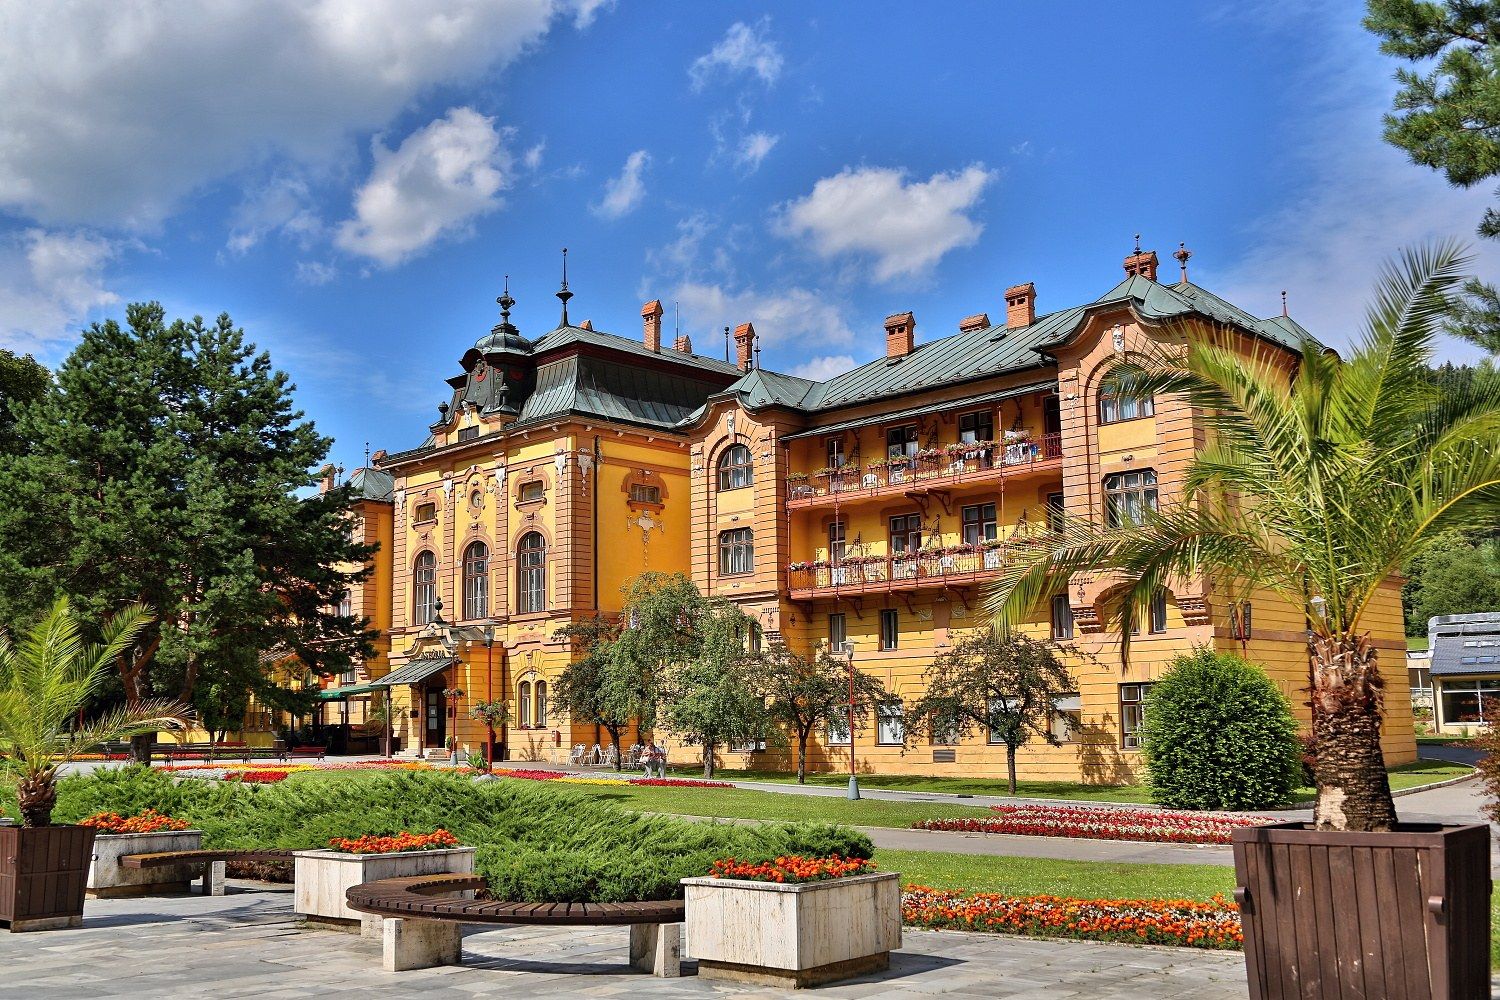 Hotel Astória